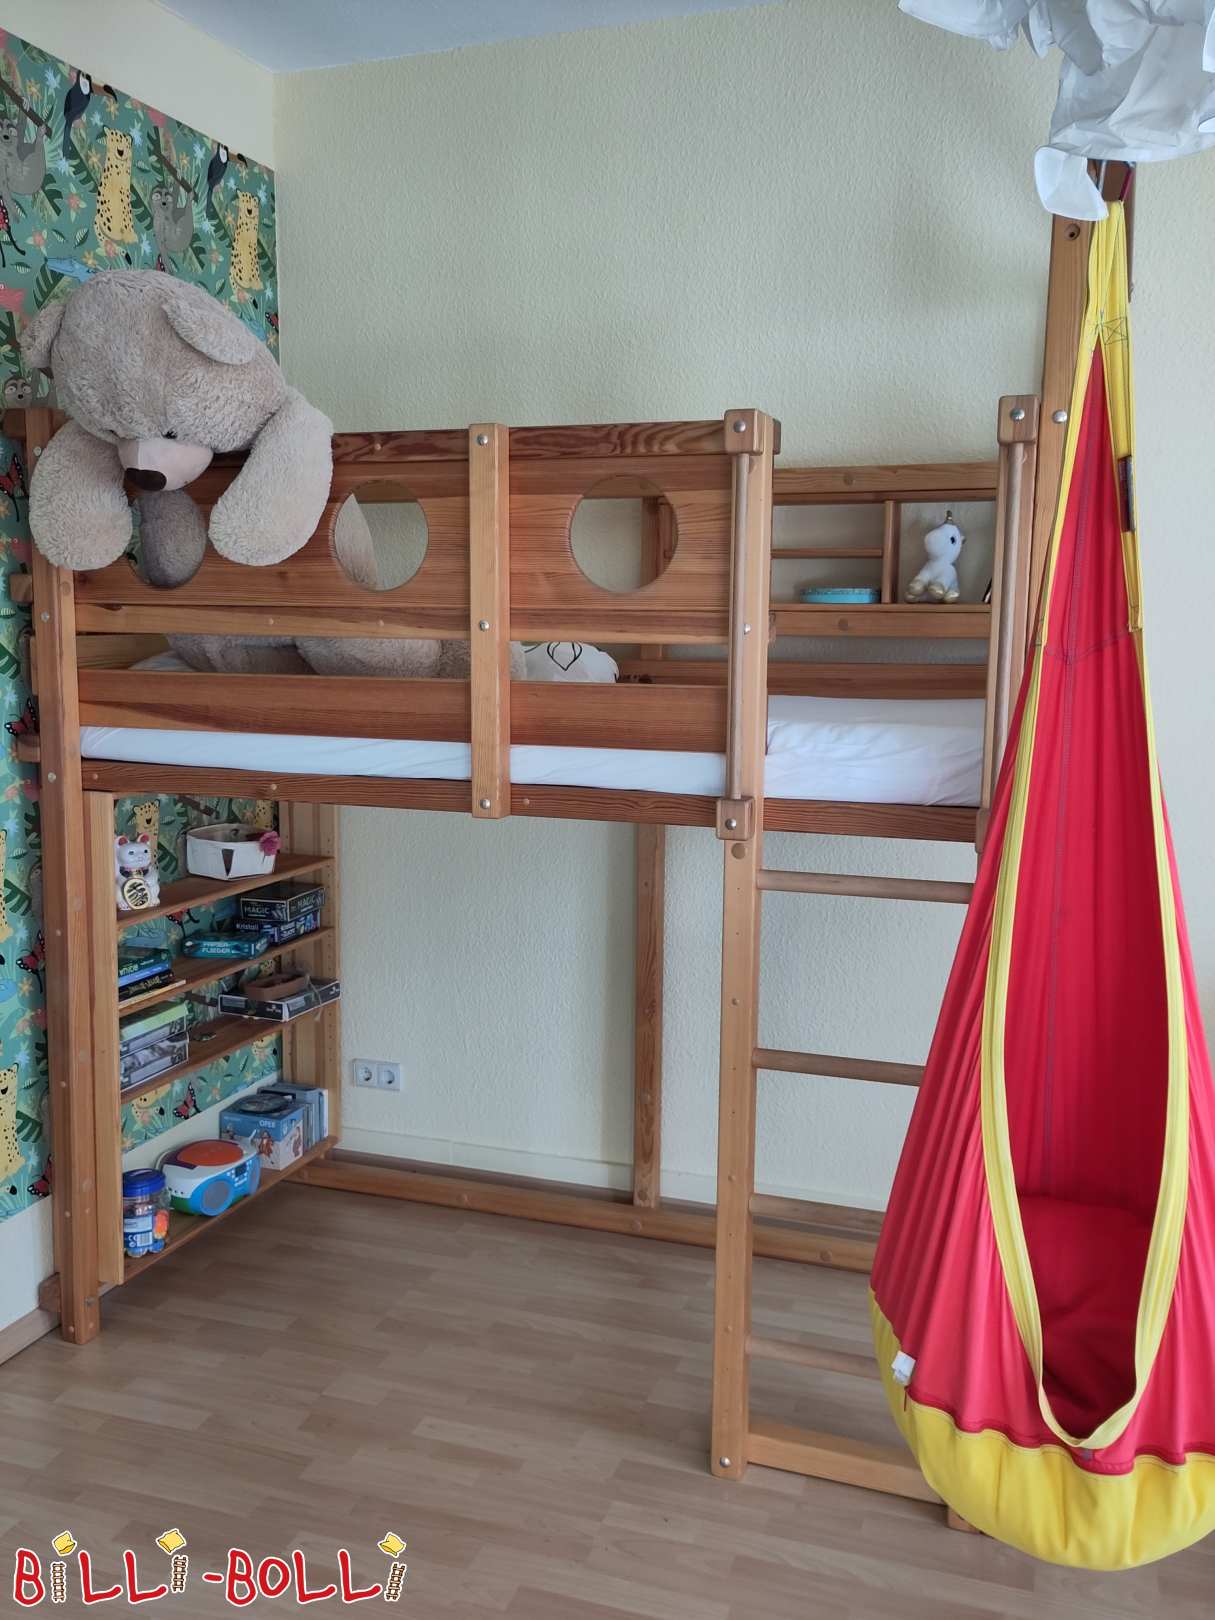 Palėpės lova, auganti su vaiku su skylių lentomis ir dviem lentynomis (Kategorija: Palėpės lova auga kartu su vaiku used)